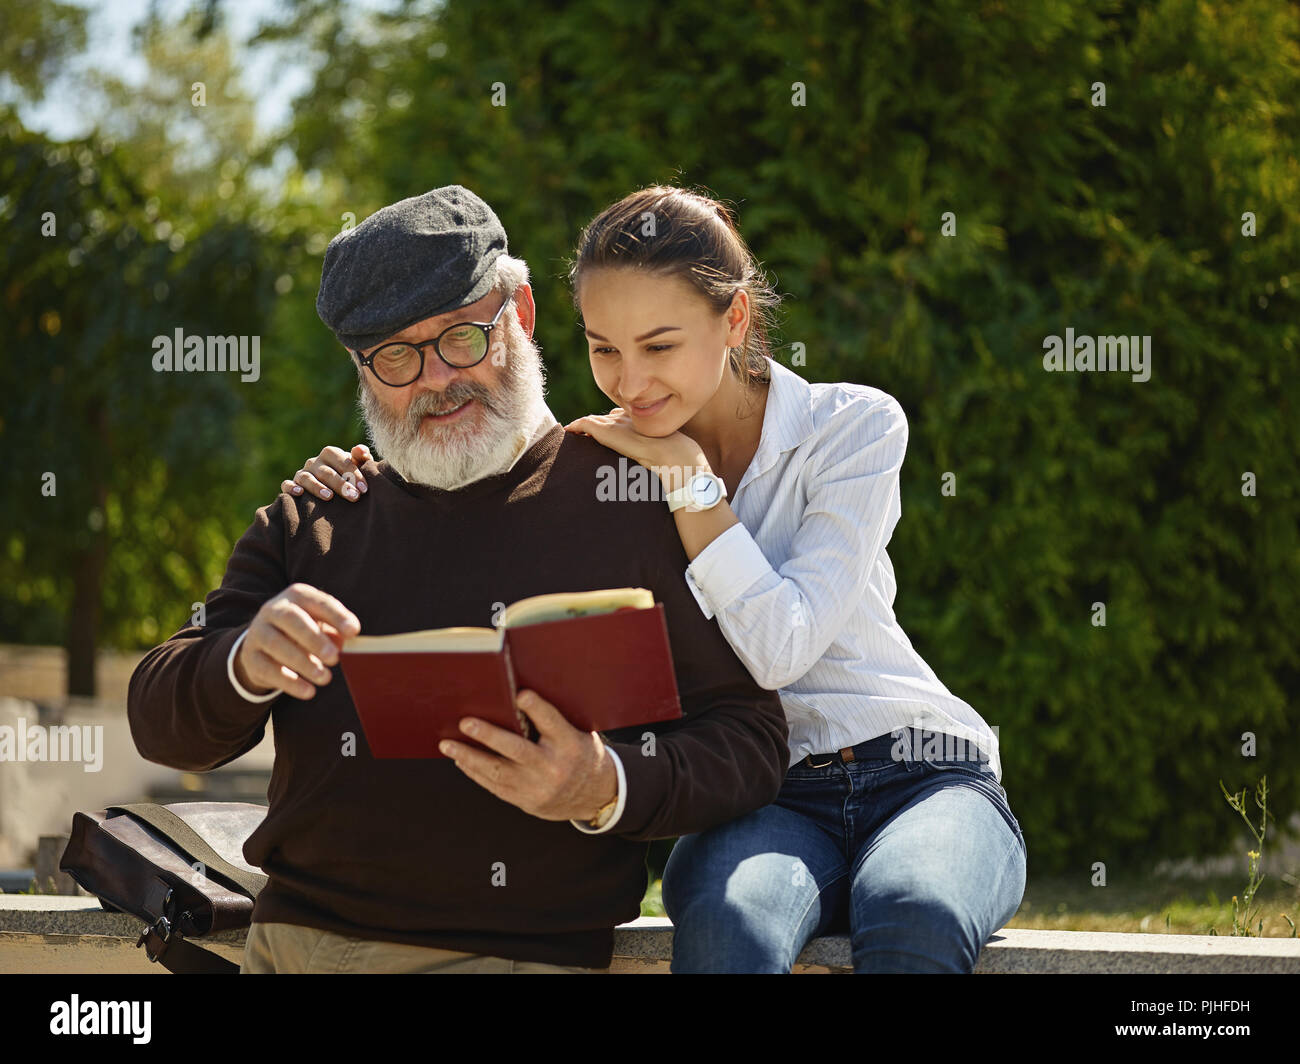 Aider quelqu'un que vous aimez. Portrait of young smiling girl embracing grand-père avec réserve contre city park. communauté et de vie de la famille concept Banque D'Images